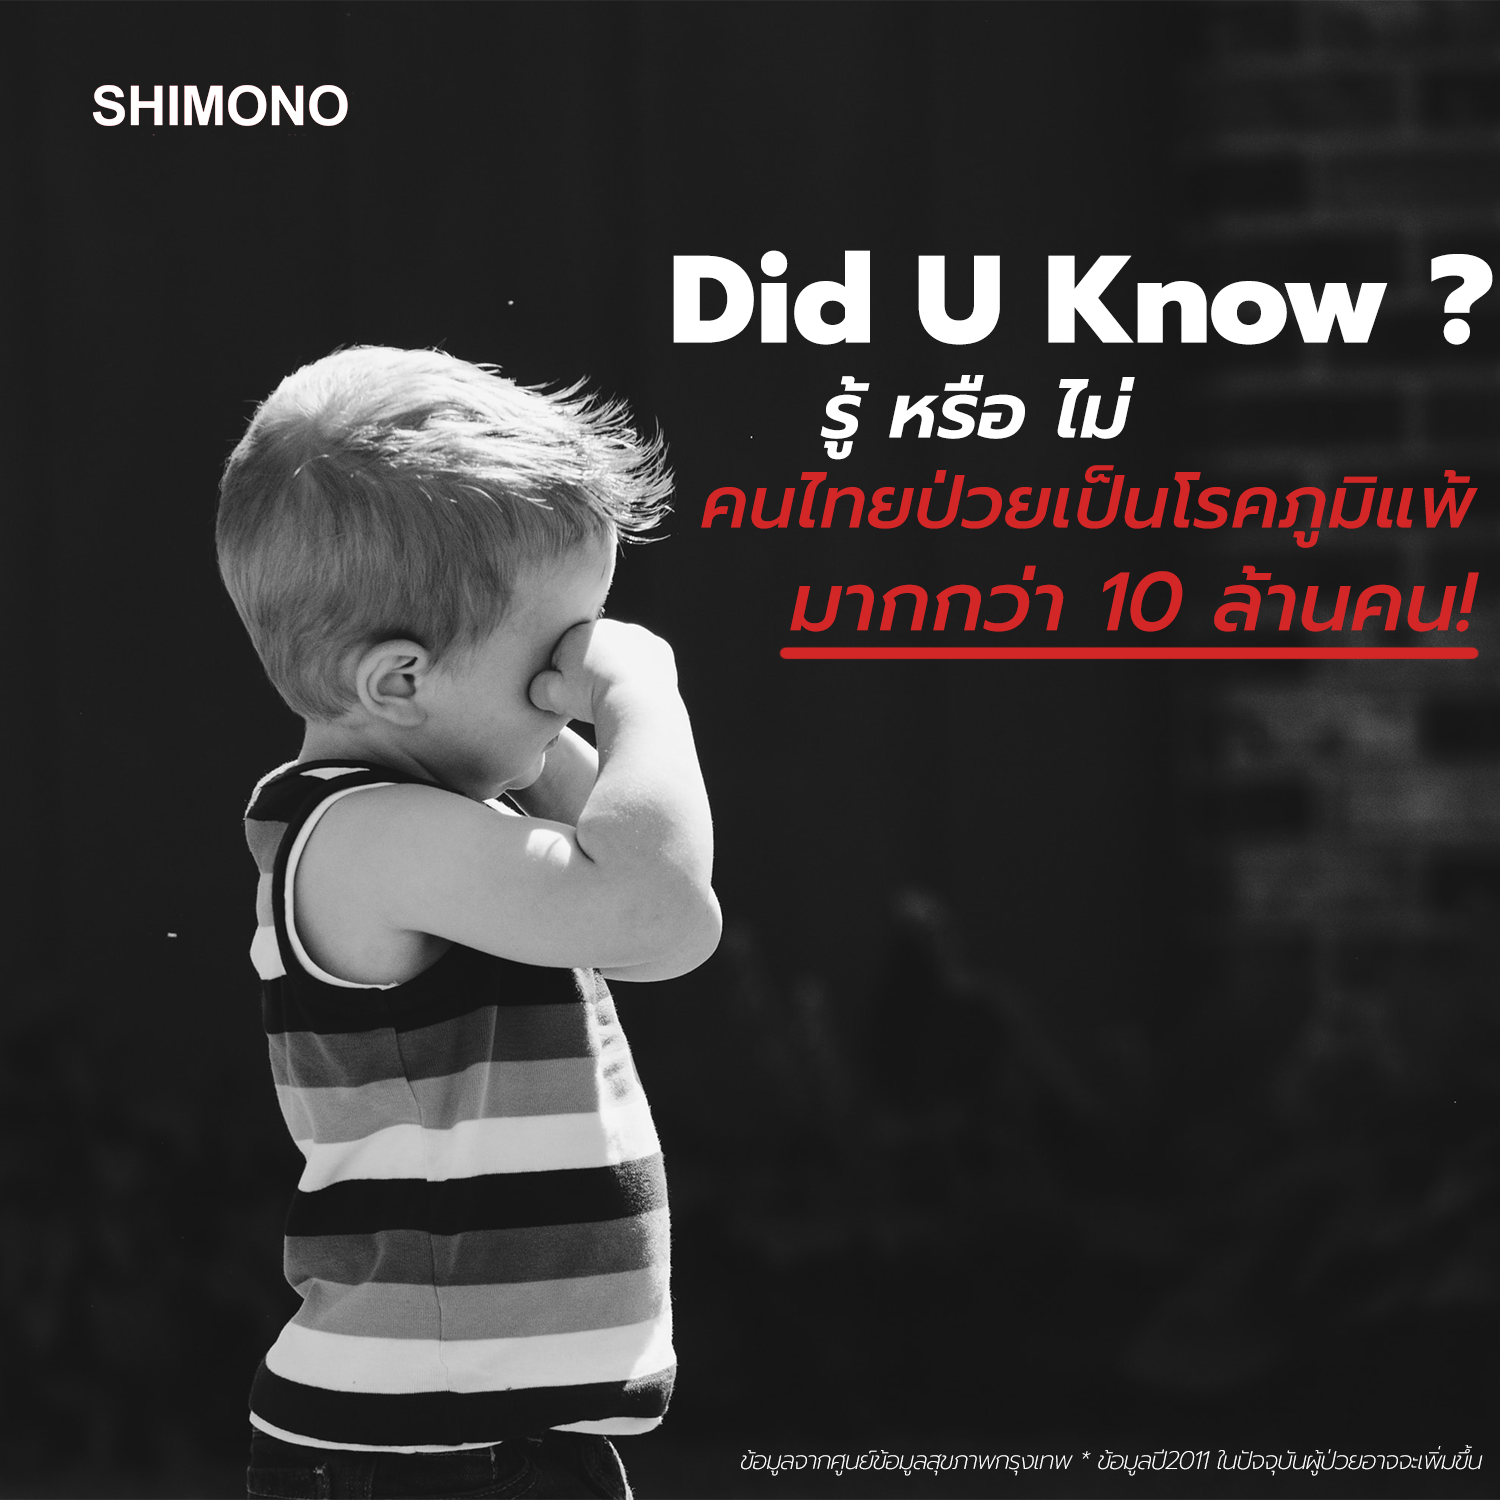 รู้หรือไม่ ? คนไทยป่วยเป็นโรคภูมิแพ้มากกว่า 10 ล้านคน